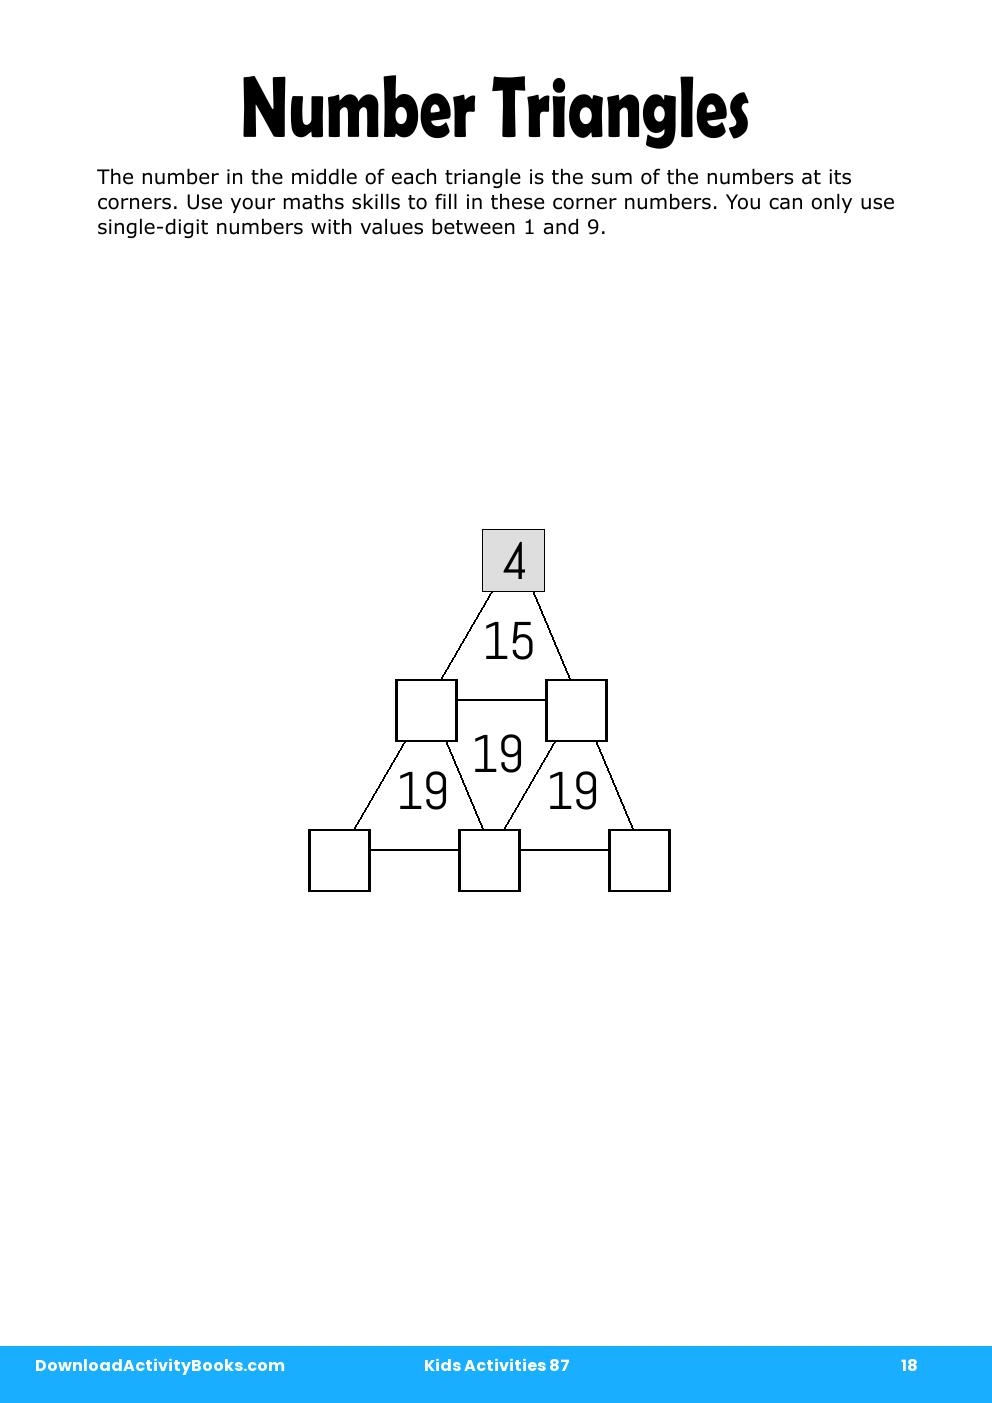 Number Triangles in Kids Activities 87